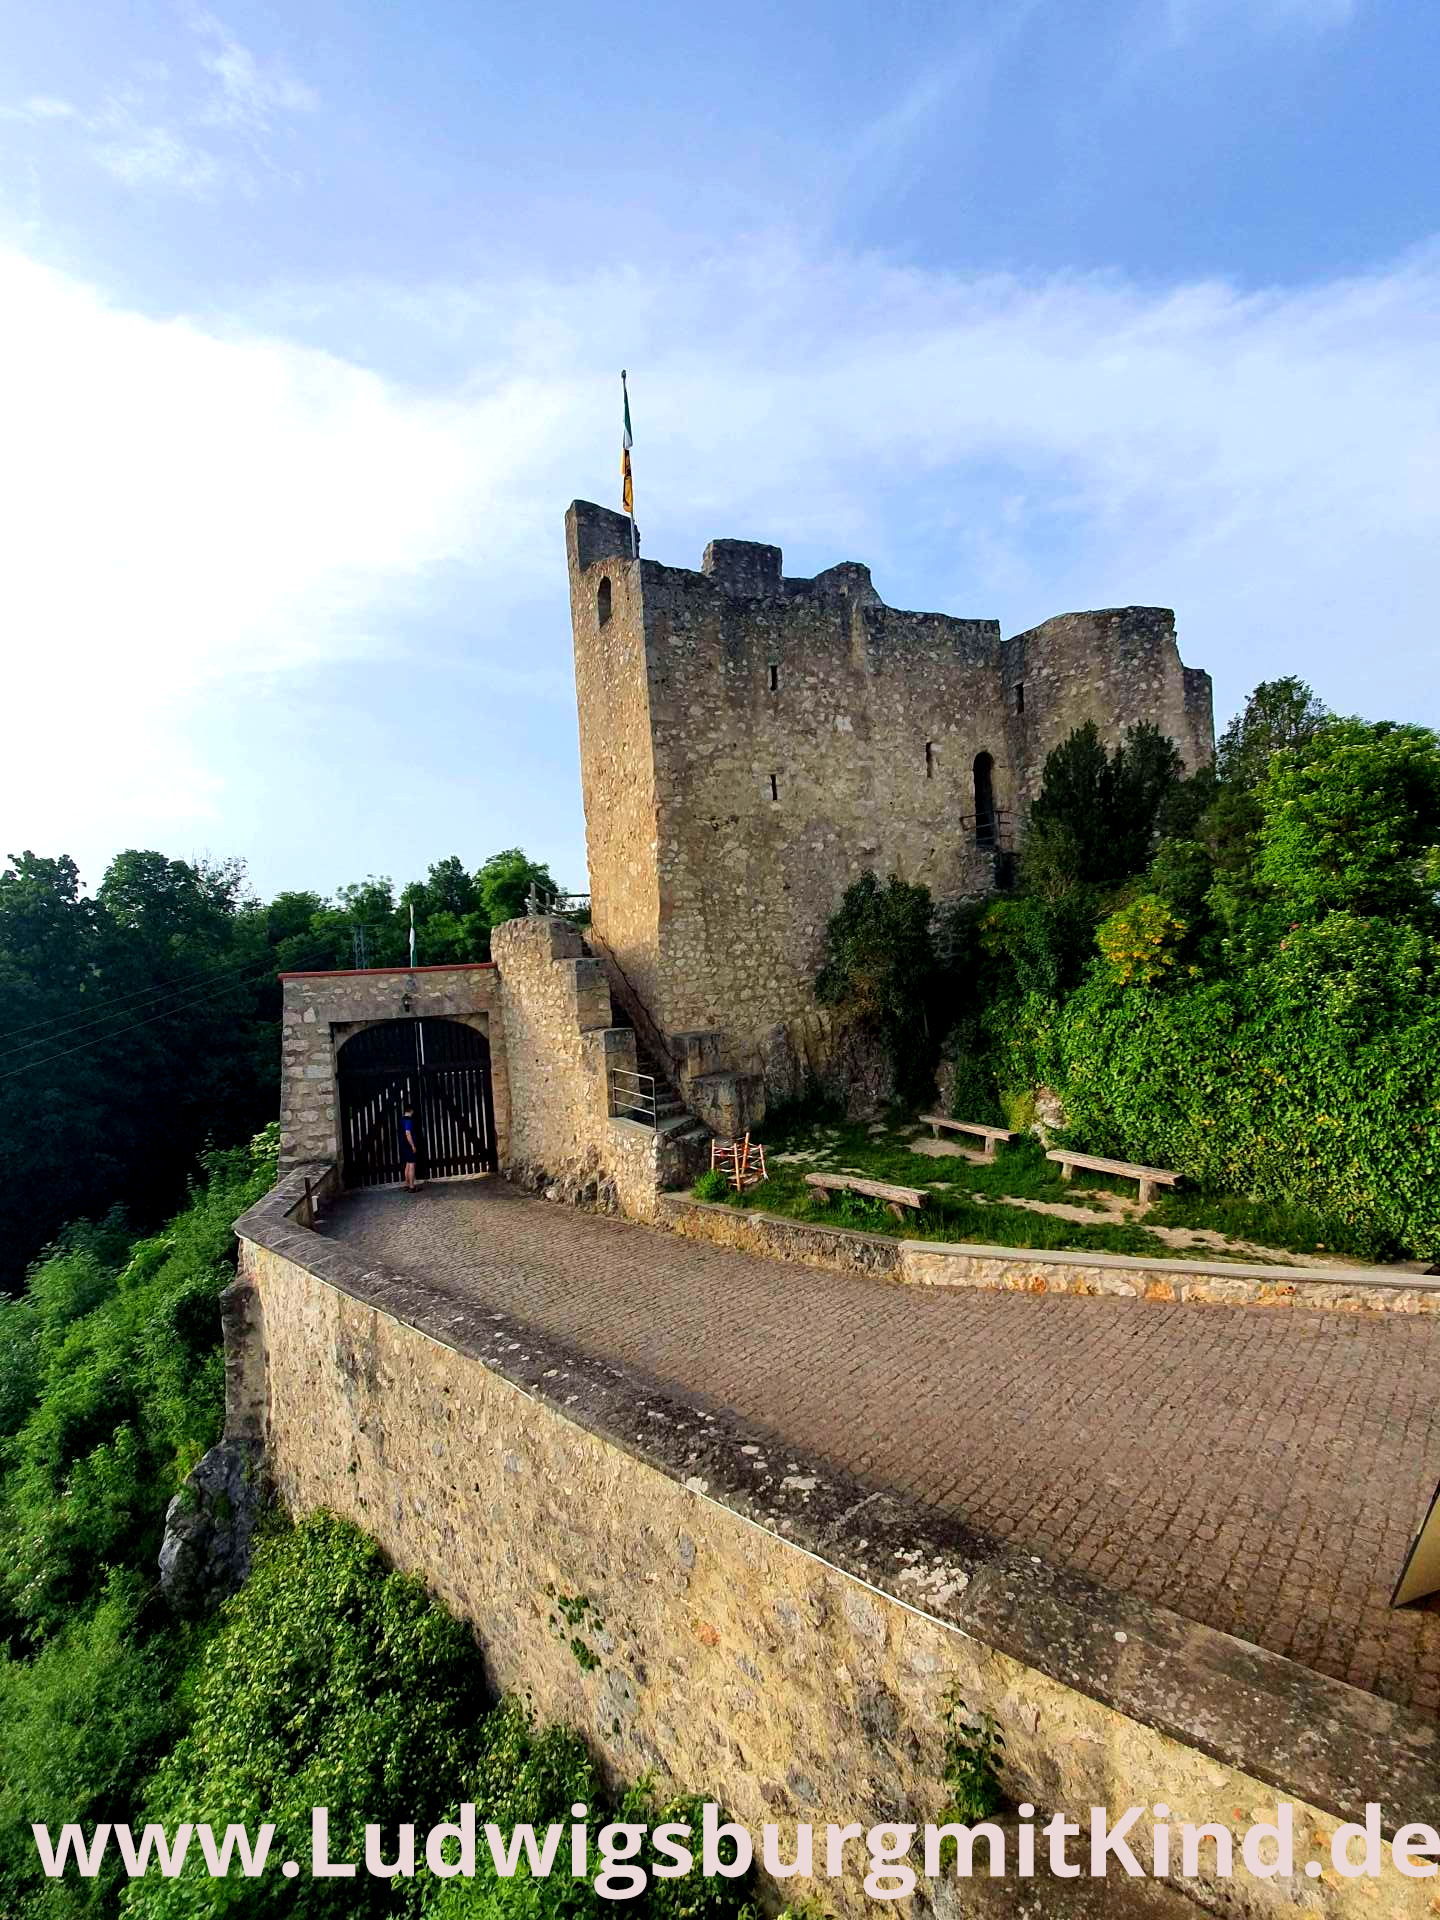 Die Burg Derneck mit Fahnenmast und Burgtor.